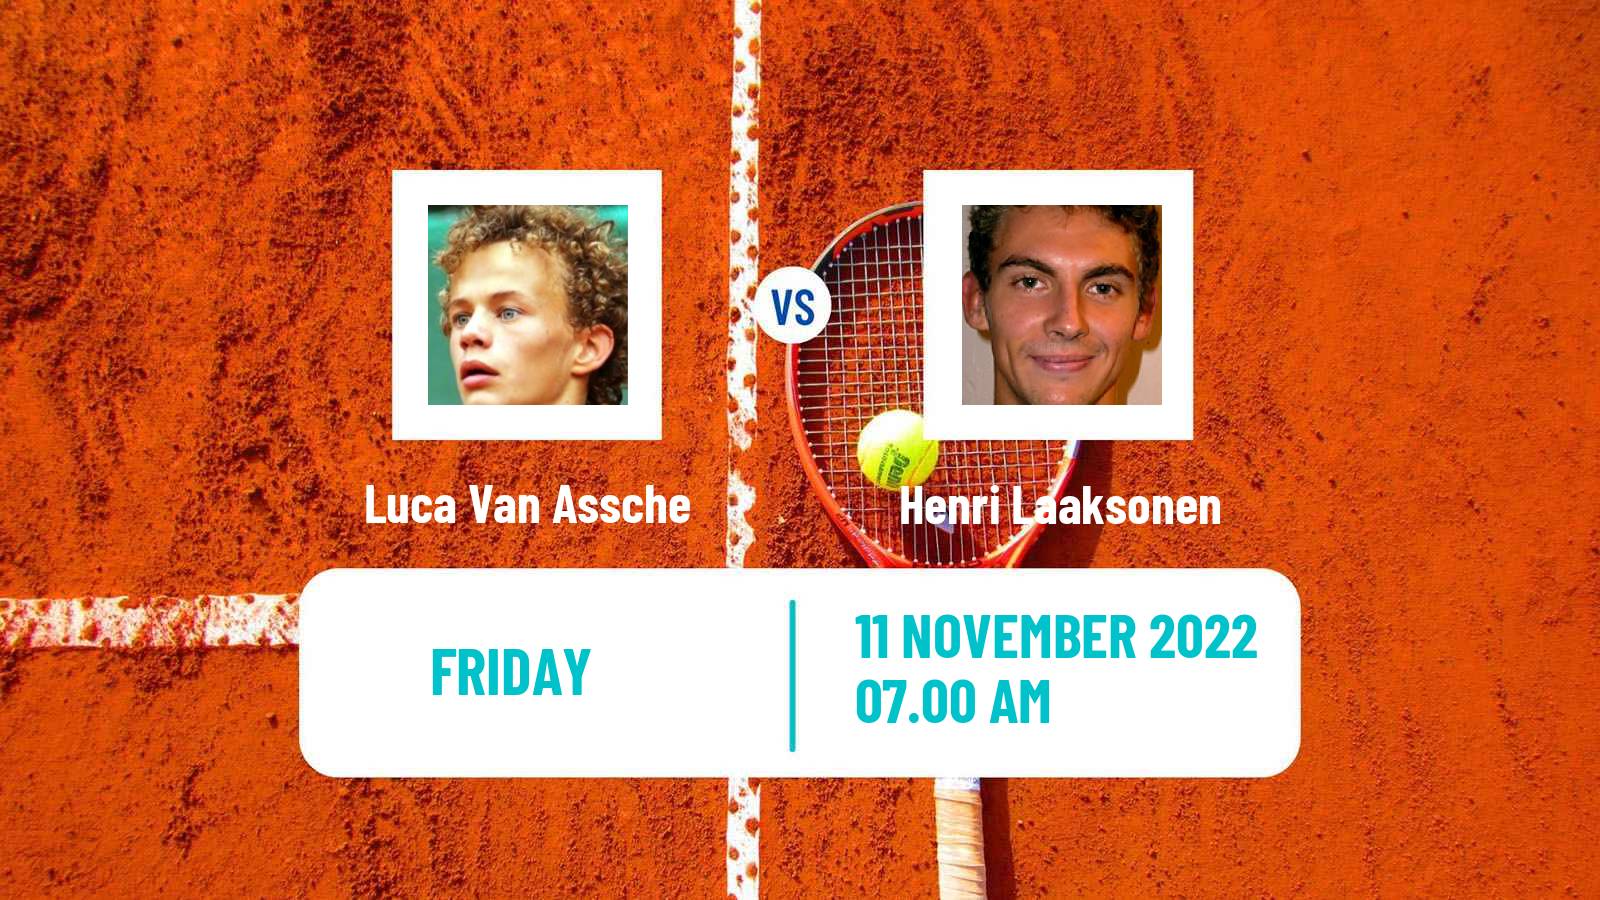 Tennis ATP Challenger Luca Van Assche - Henri Laaksonen